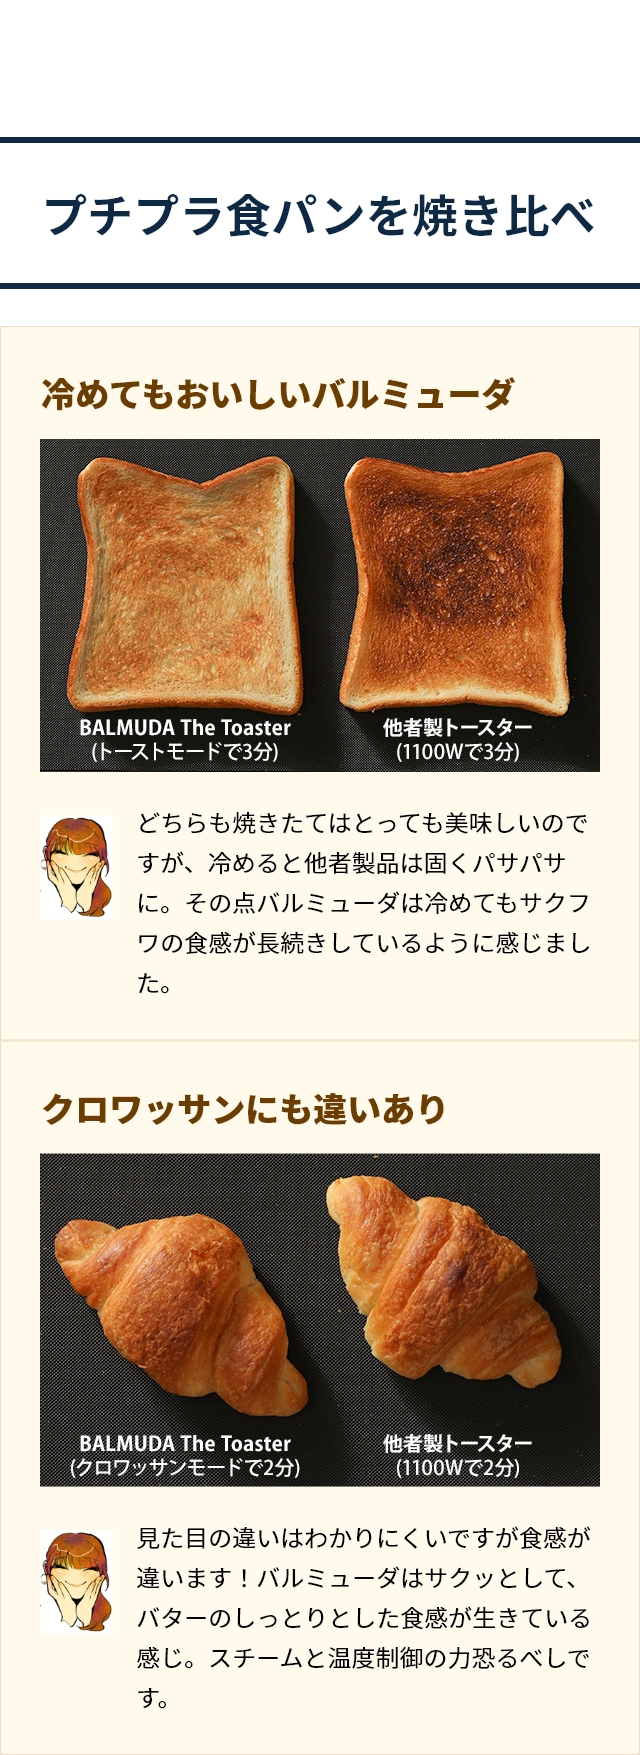 BALMUDA The Toaster Pro（バルミューダ ザ・トースター プロ）K05A-SE：プチプラ食パンを焼き比べ